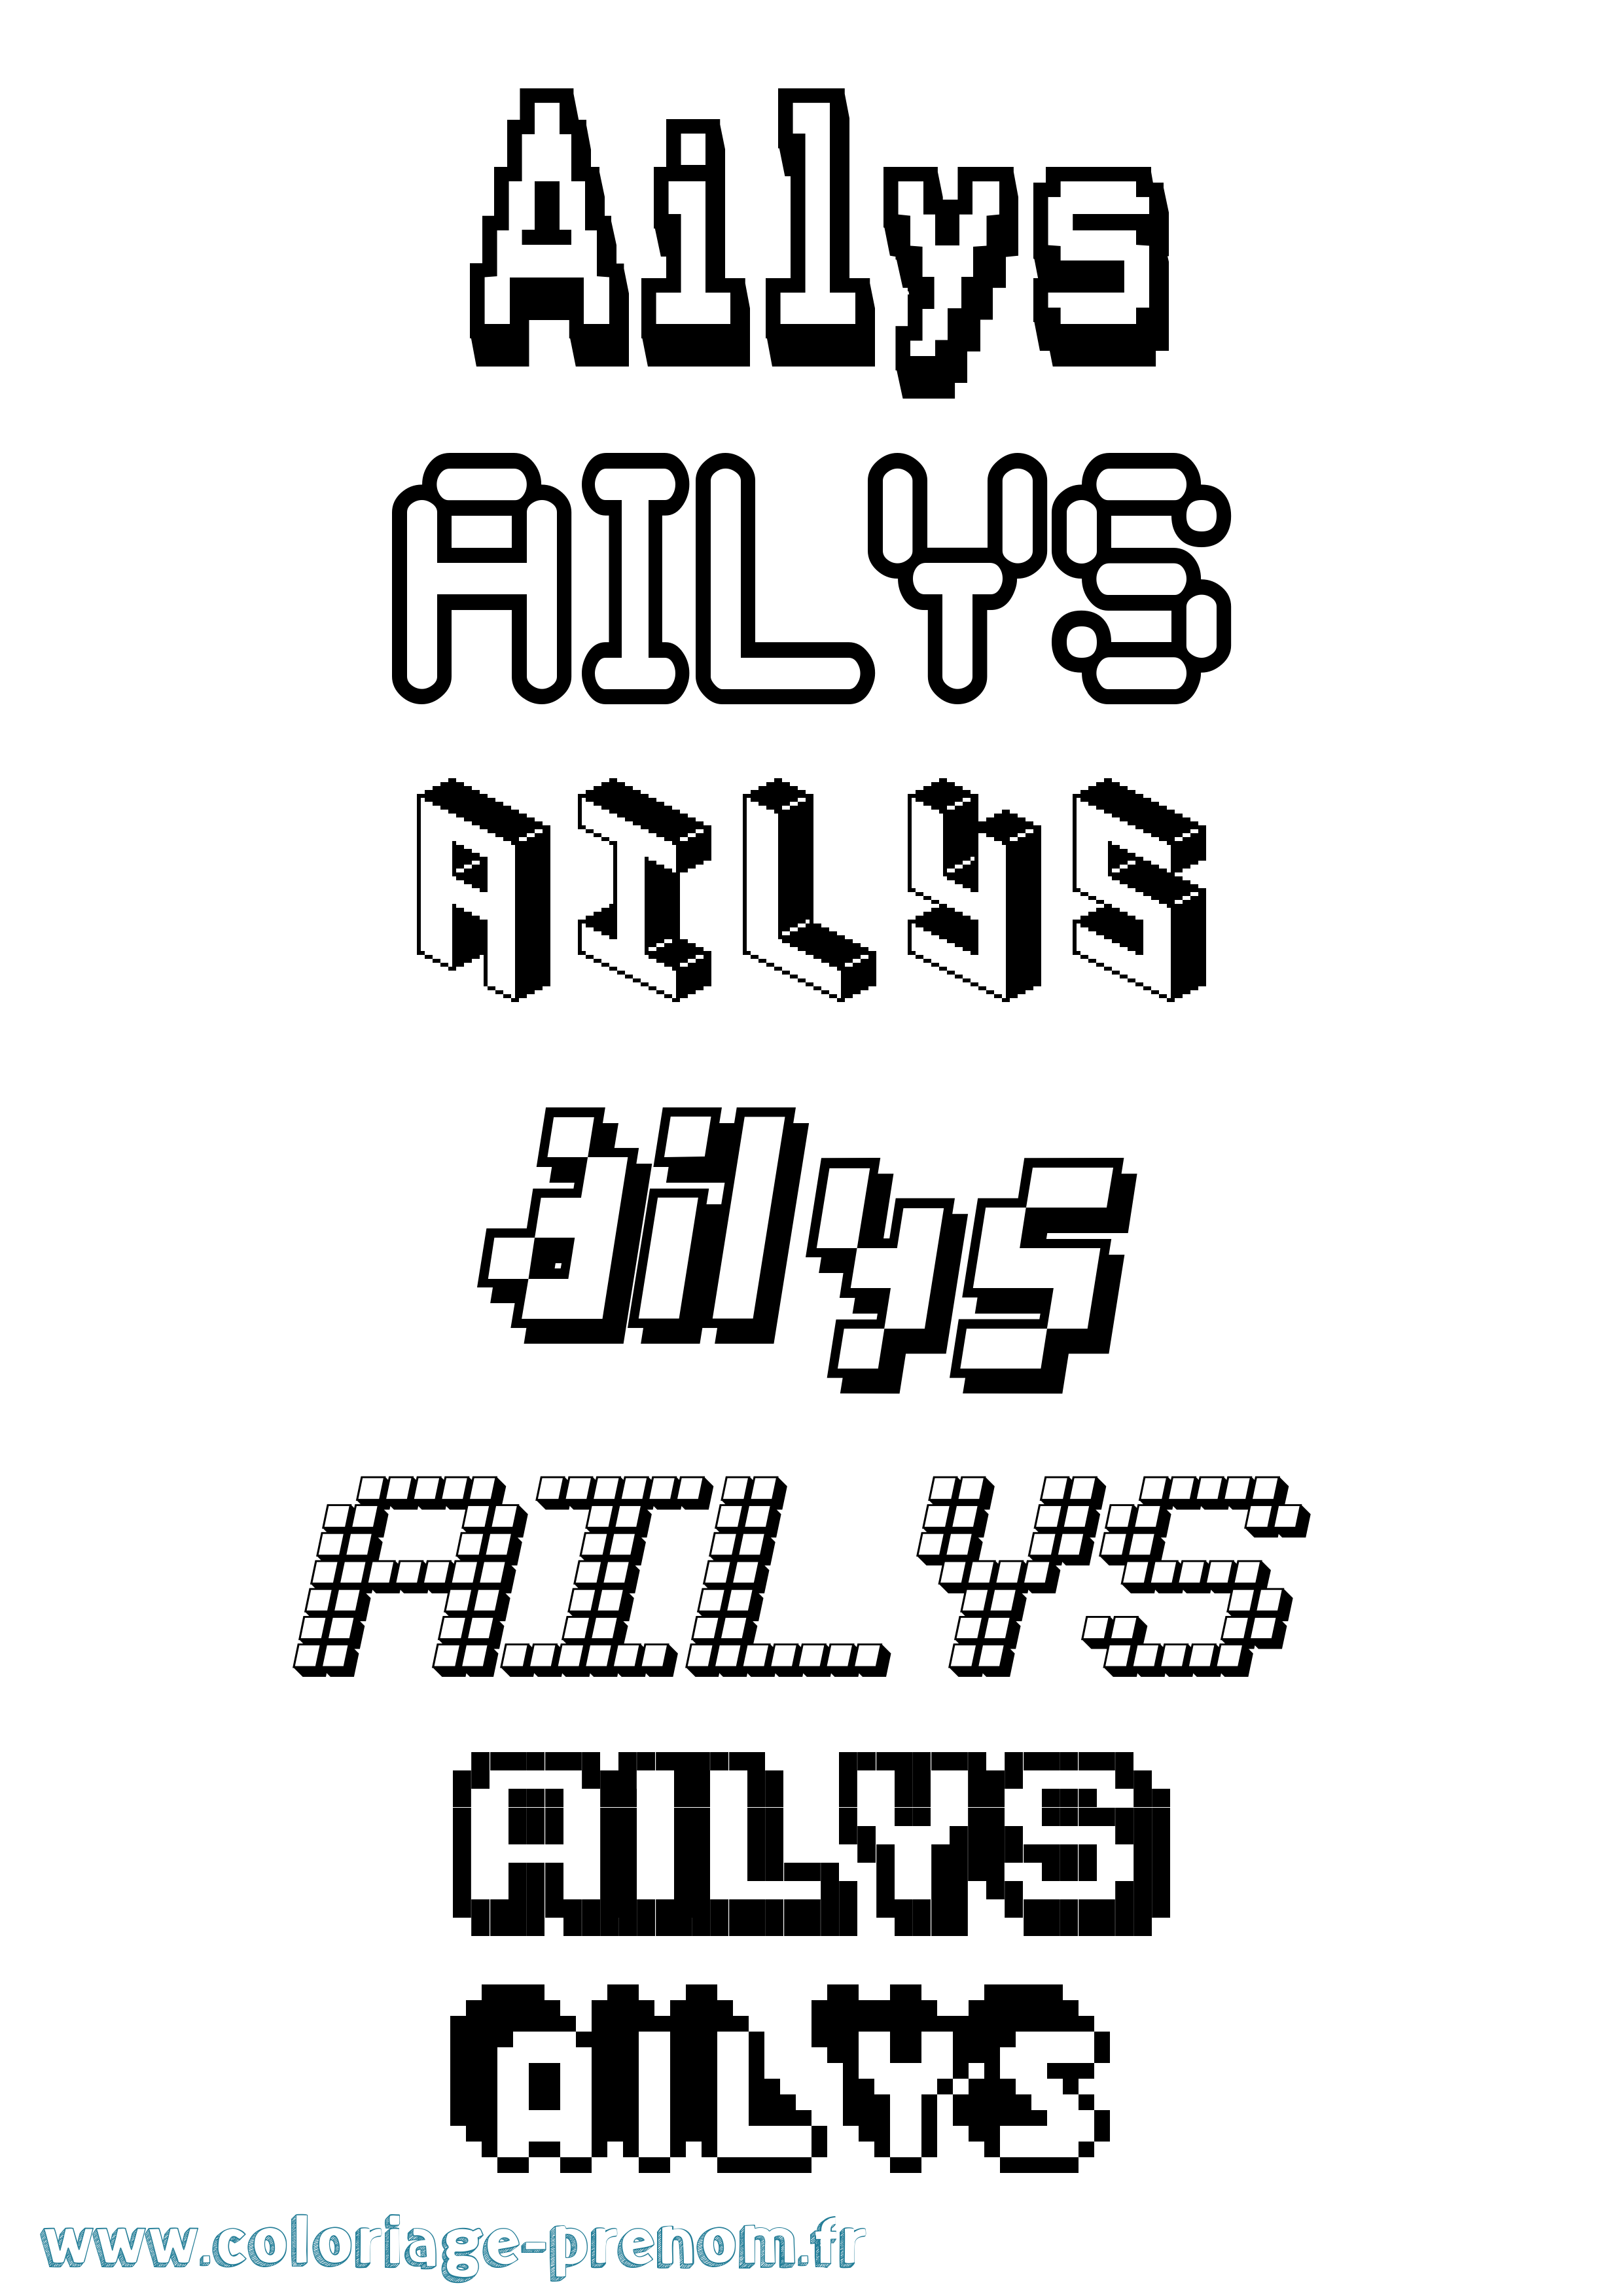 Coloriage prénom Ailys